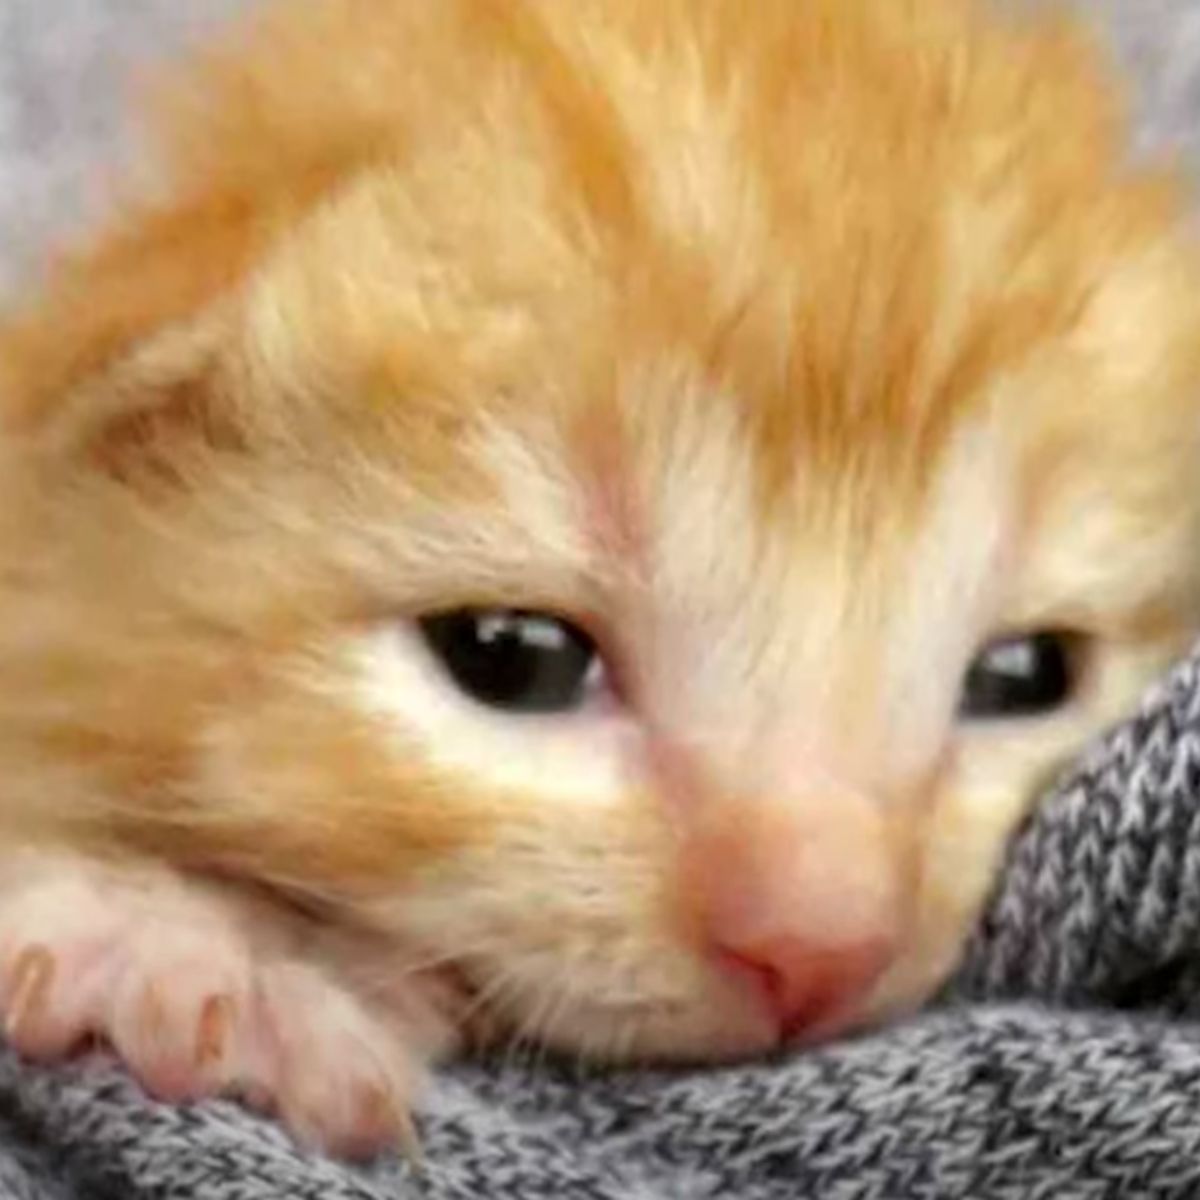 adorable ginger kitten